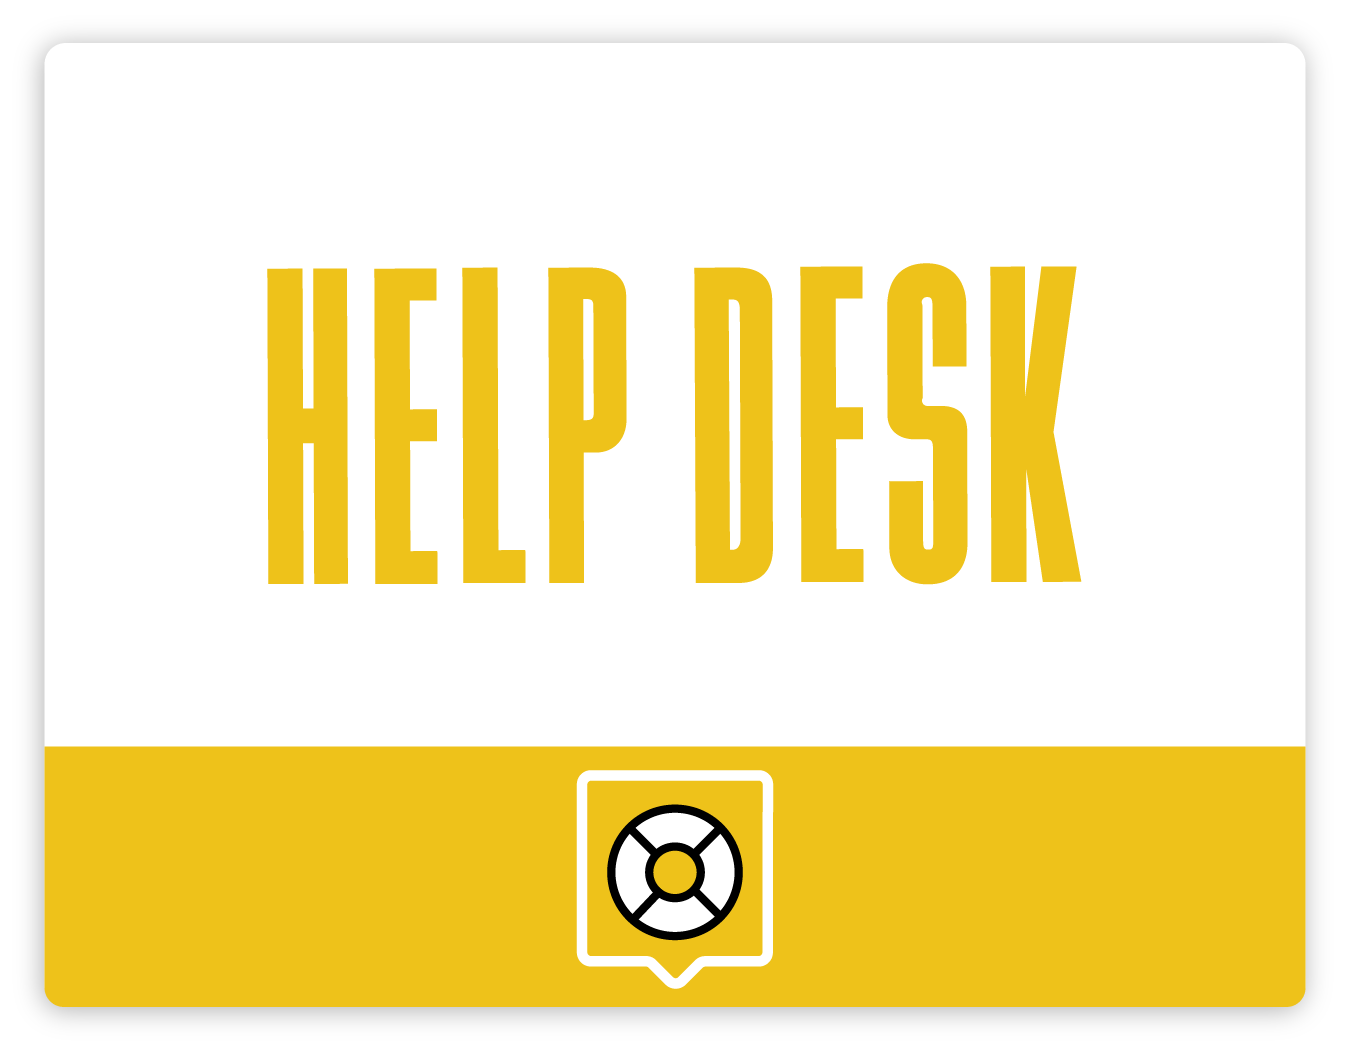 Uptime.com Support Help Desk for Website Uptime Monitoring Software